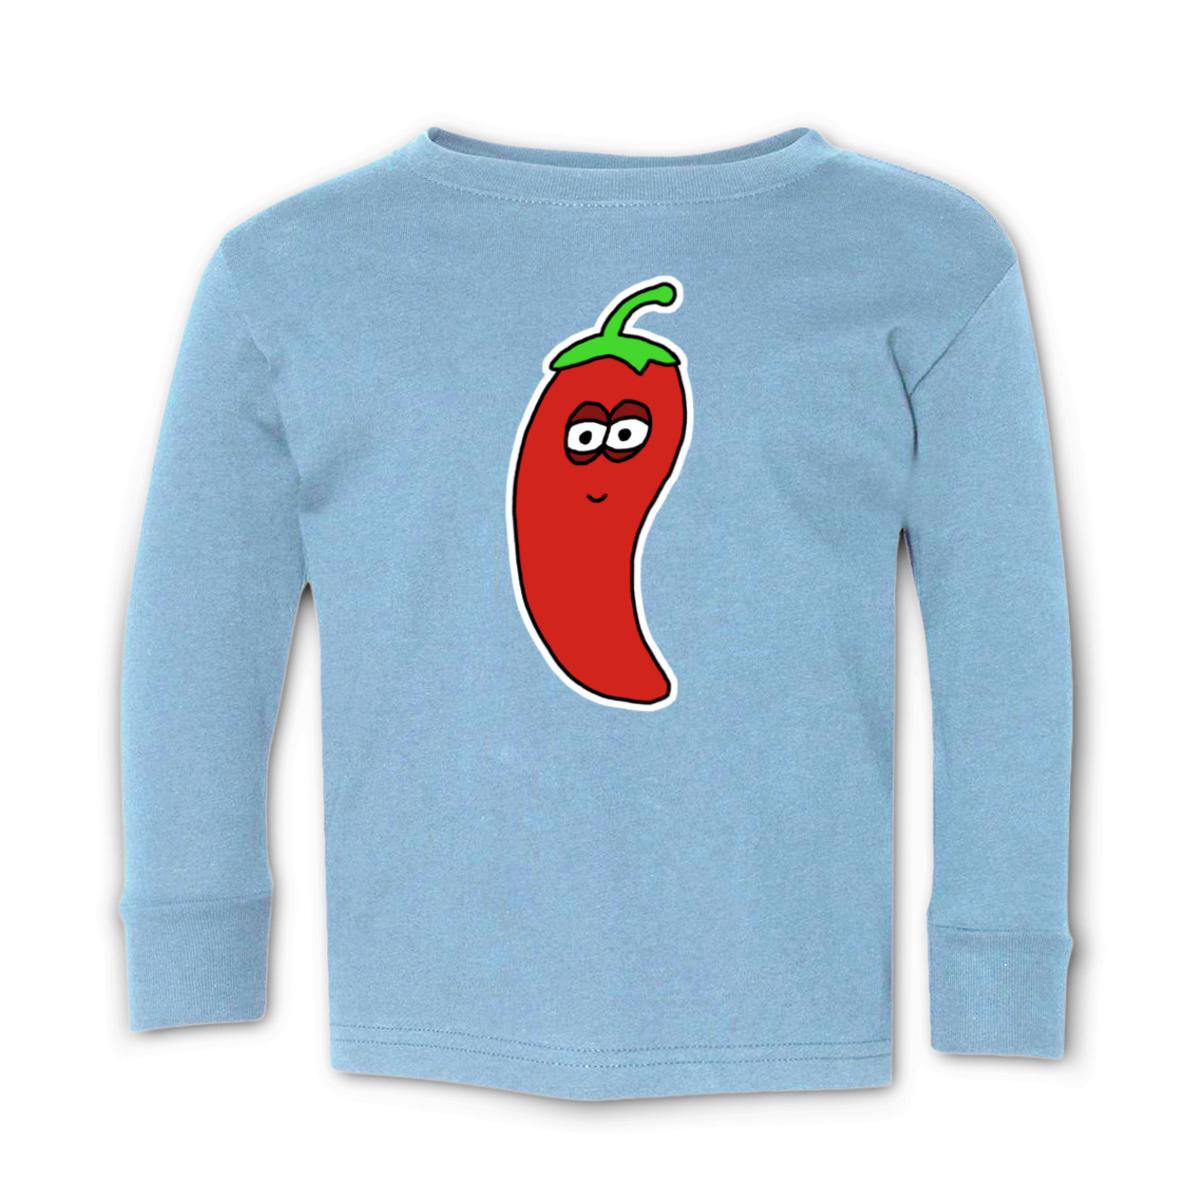 Chili Pepper Toddler Long Sleeve Tee 2T light-blue